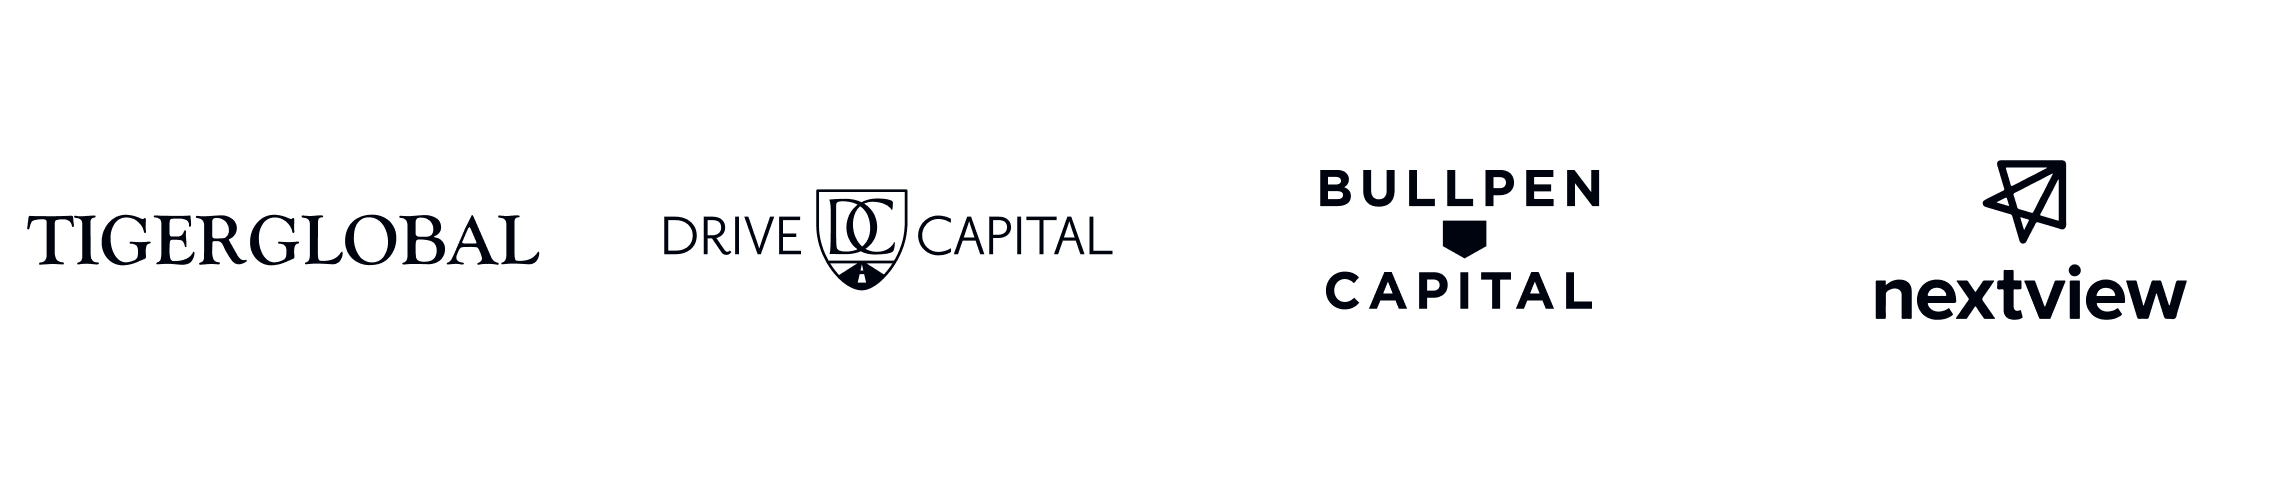 Grid of investor logos